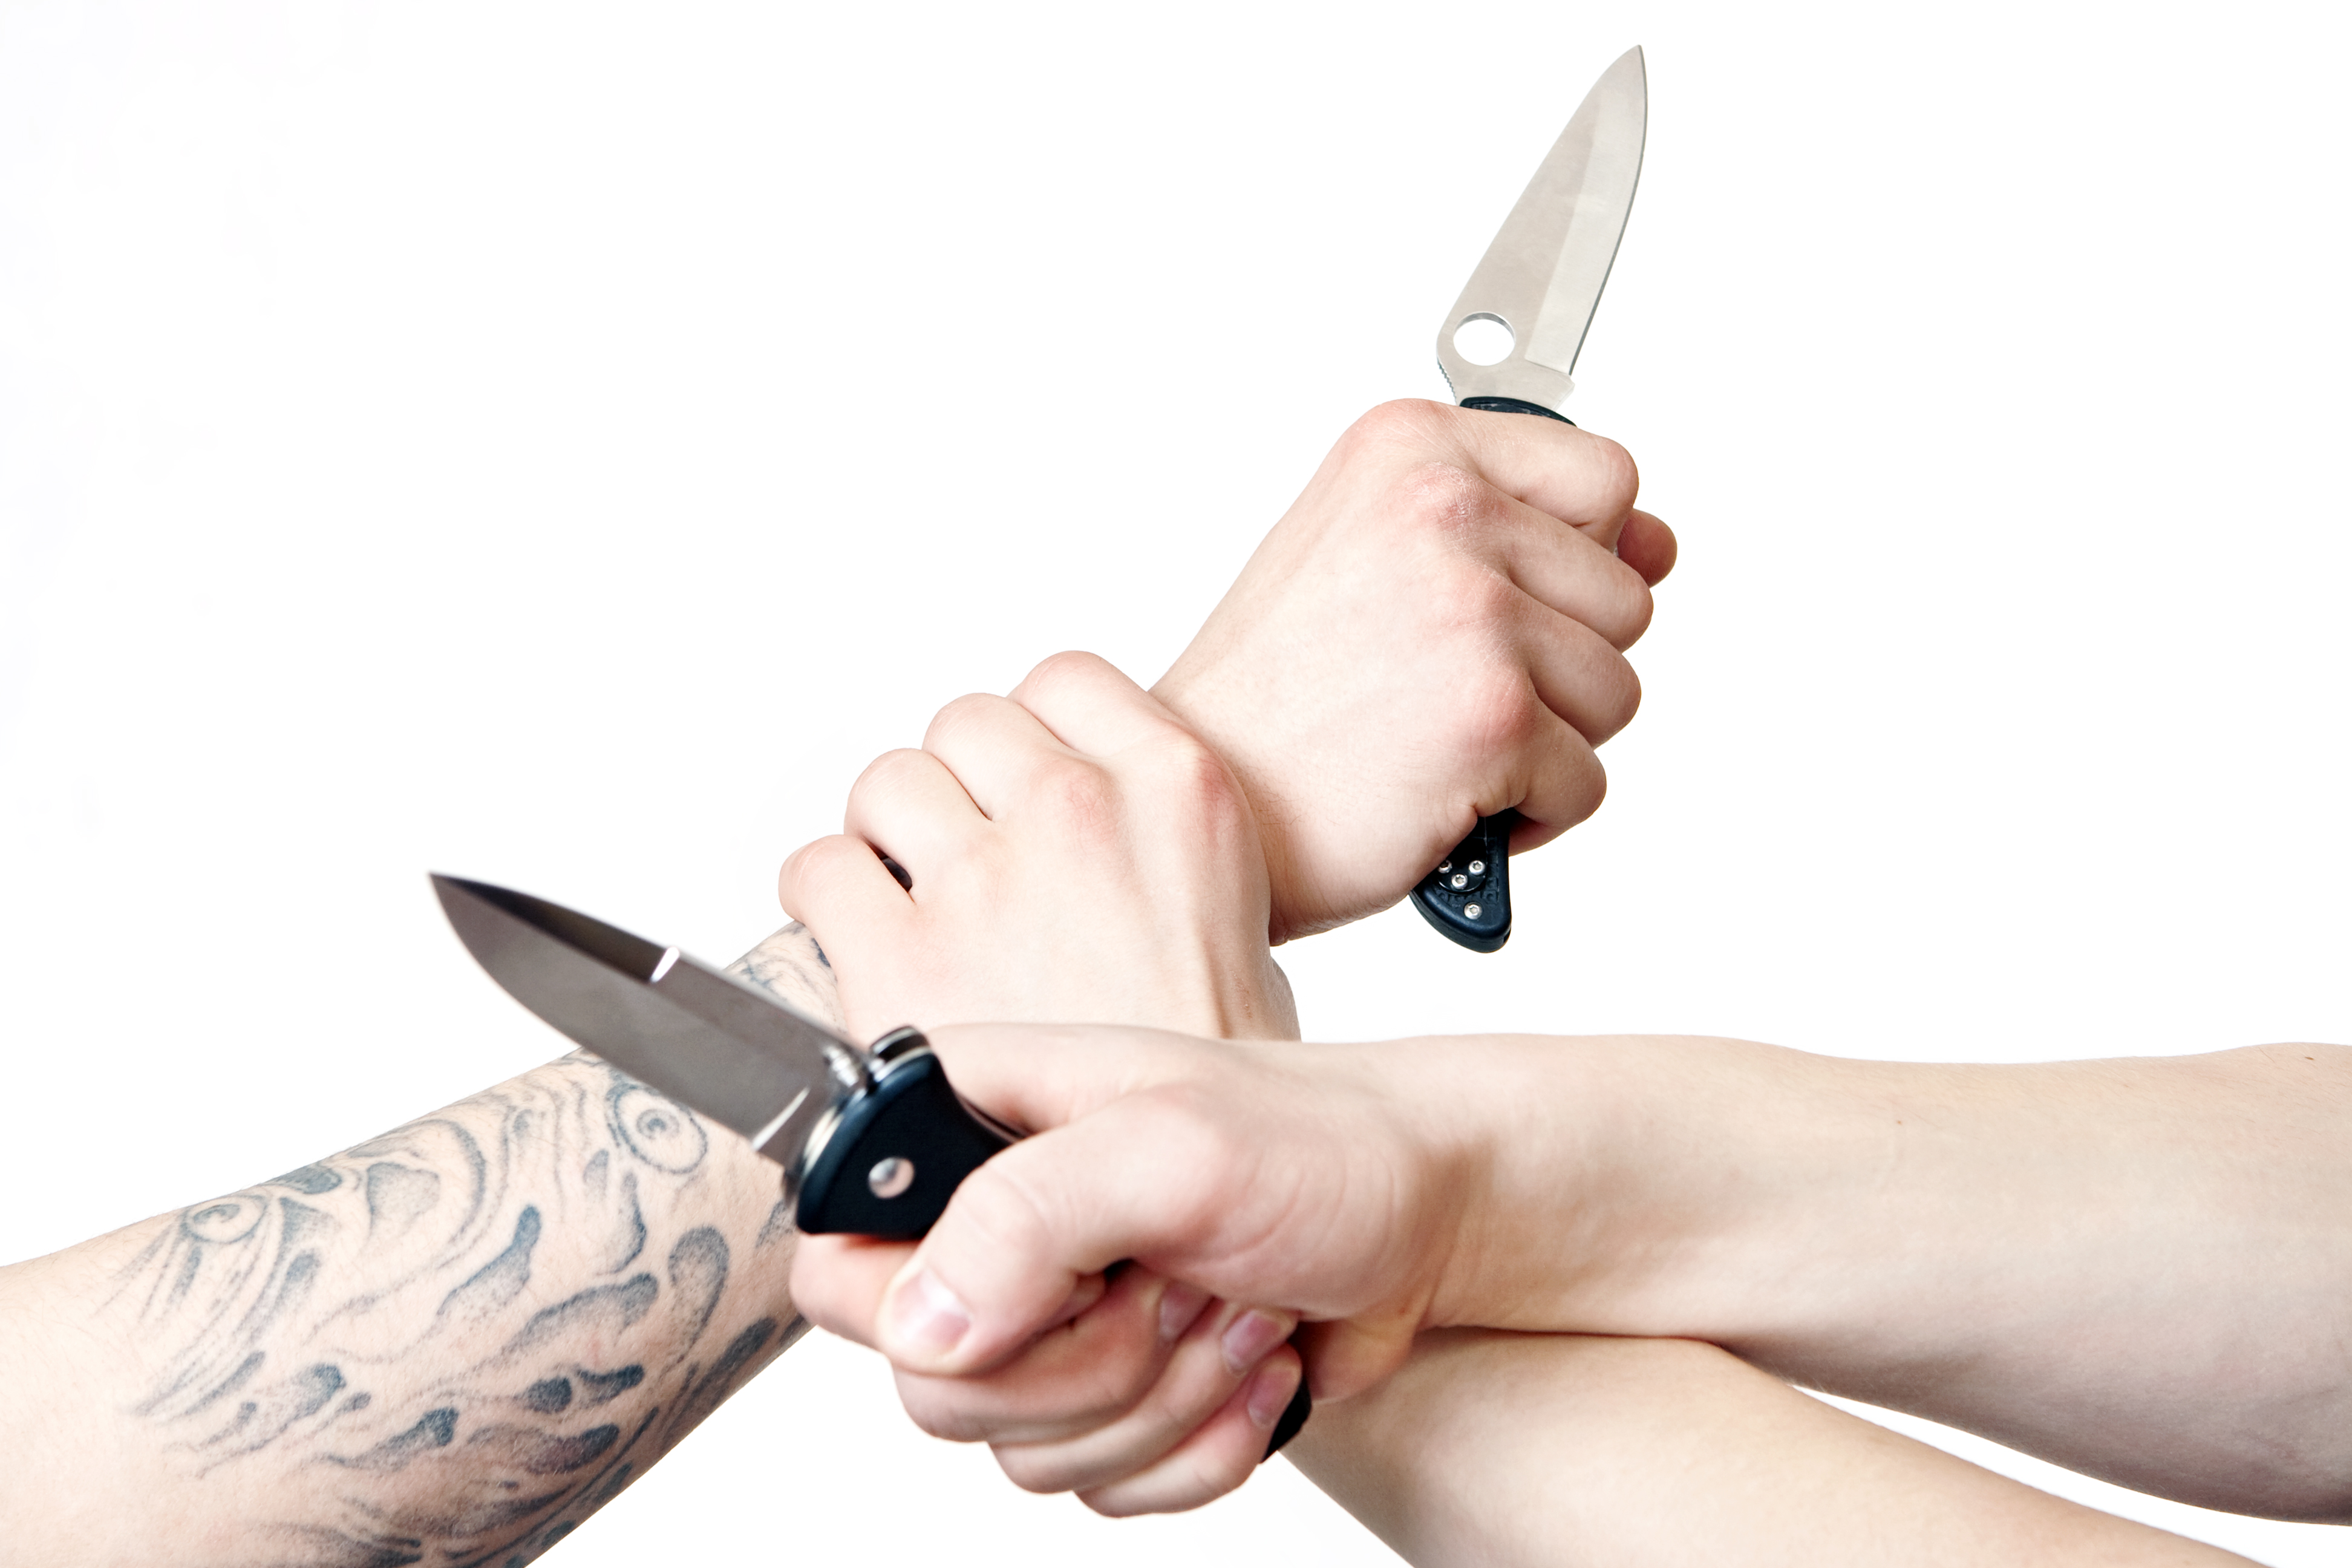 Knife fight photo